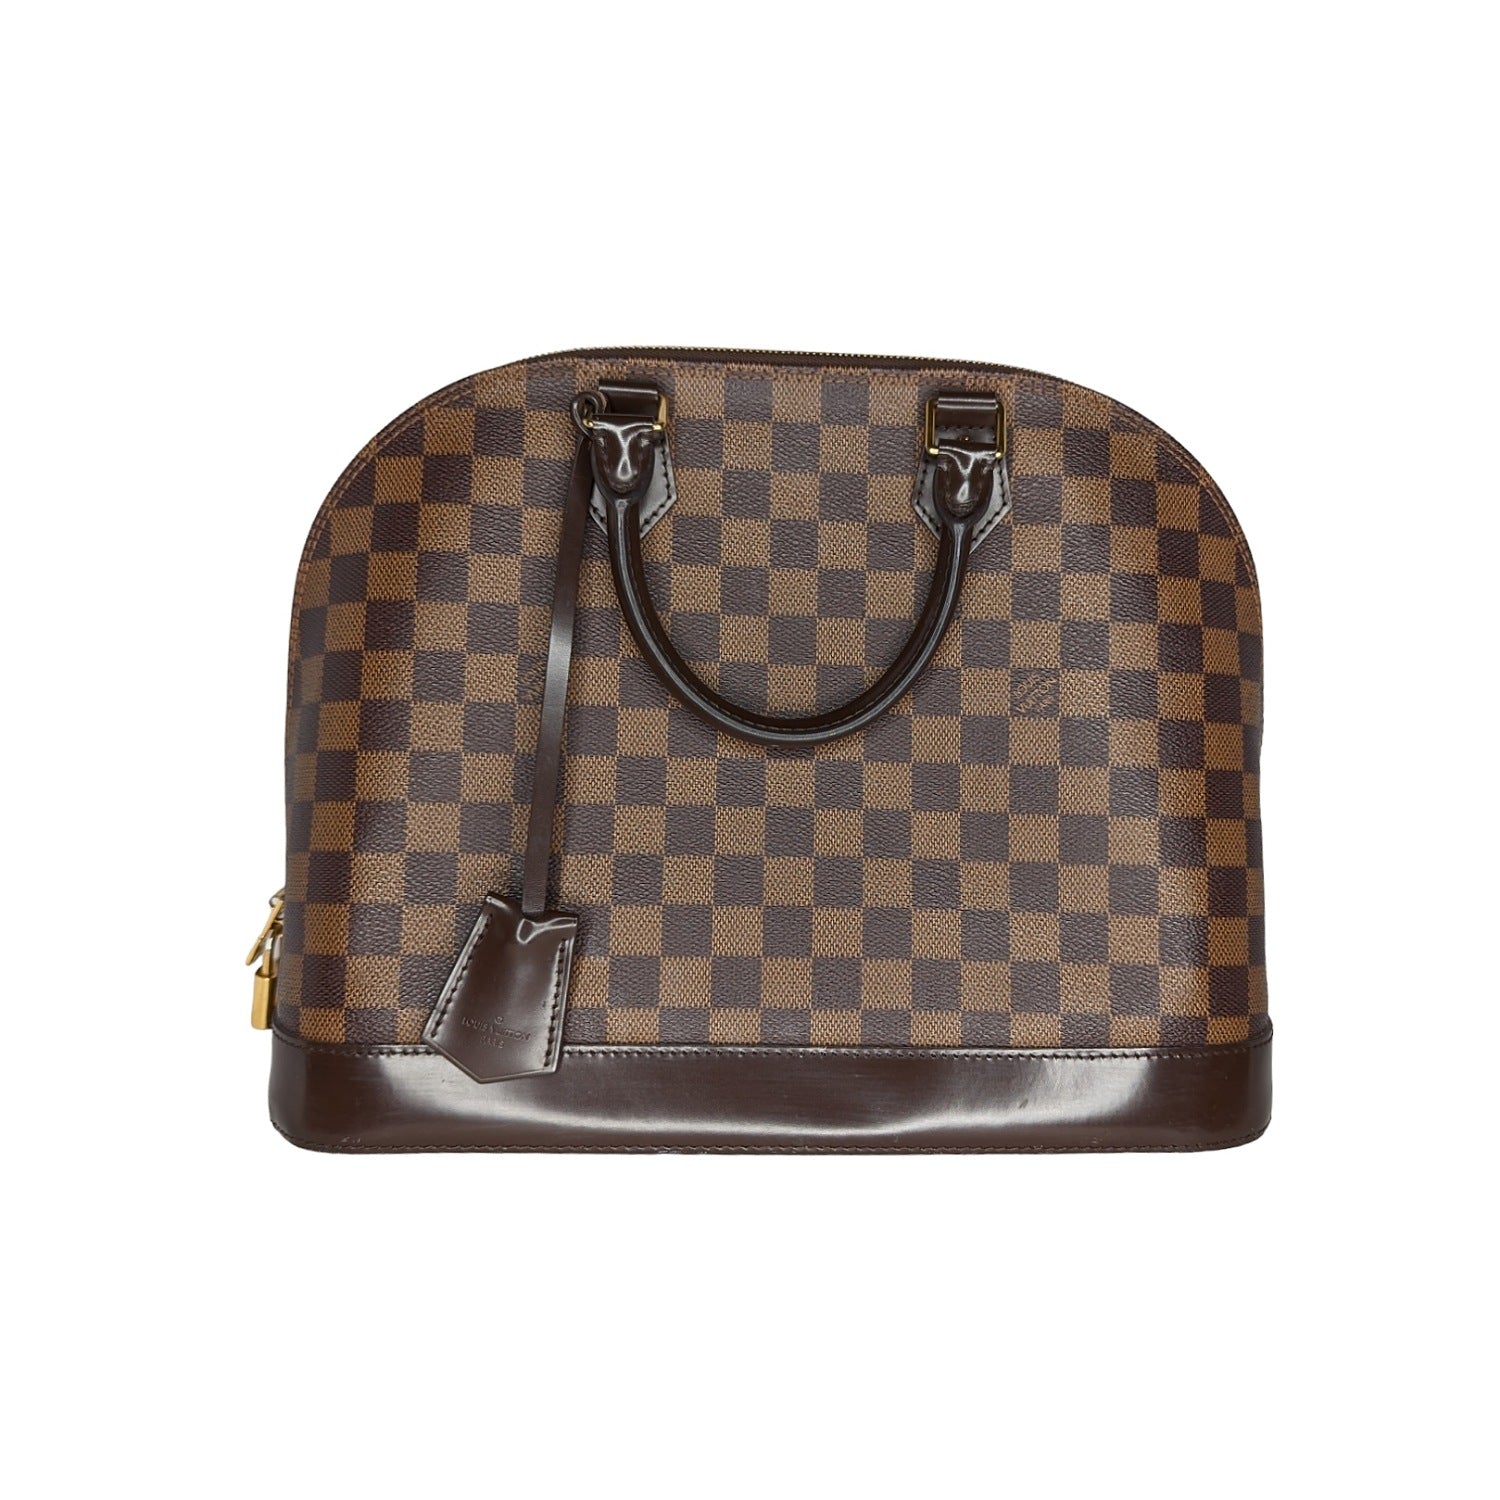 Louis Vuitton Alma Large GM Monogram Leather Satchel Bag